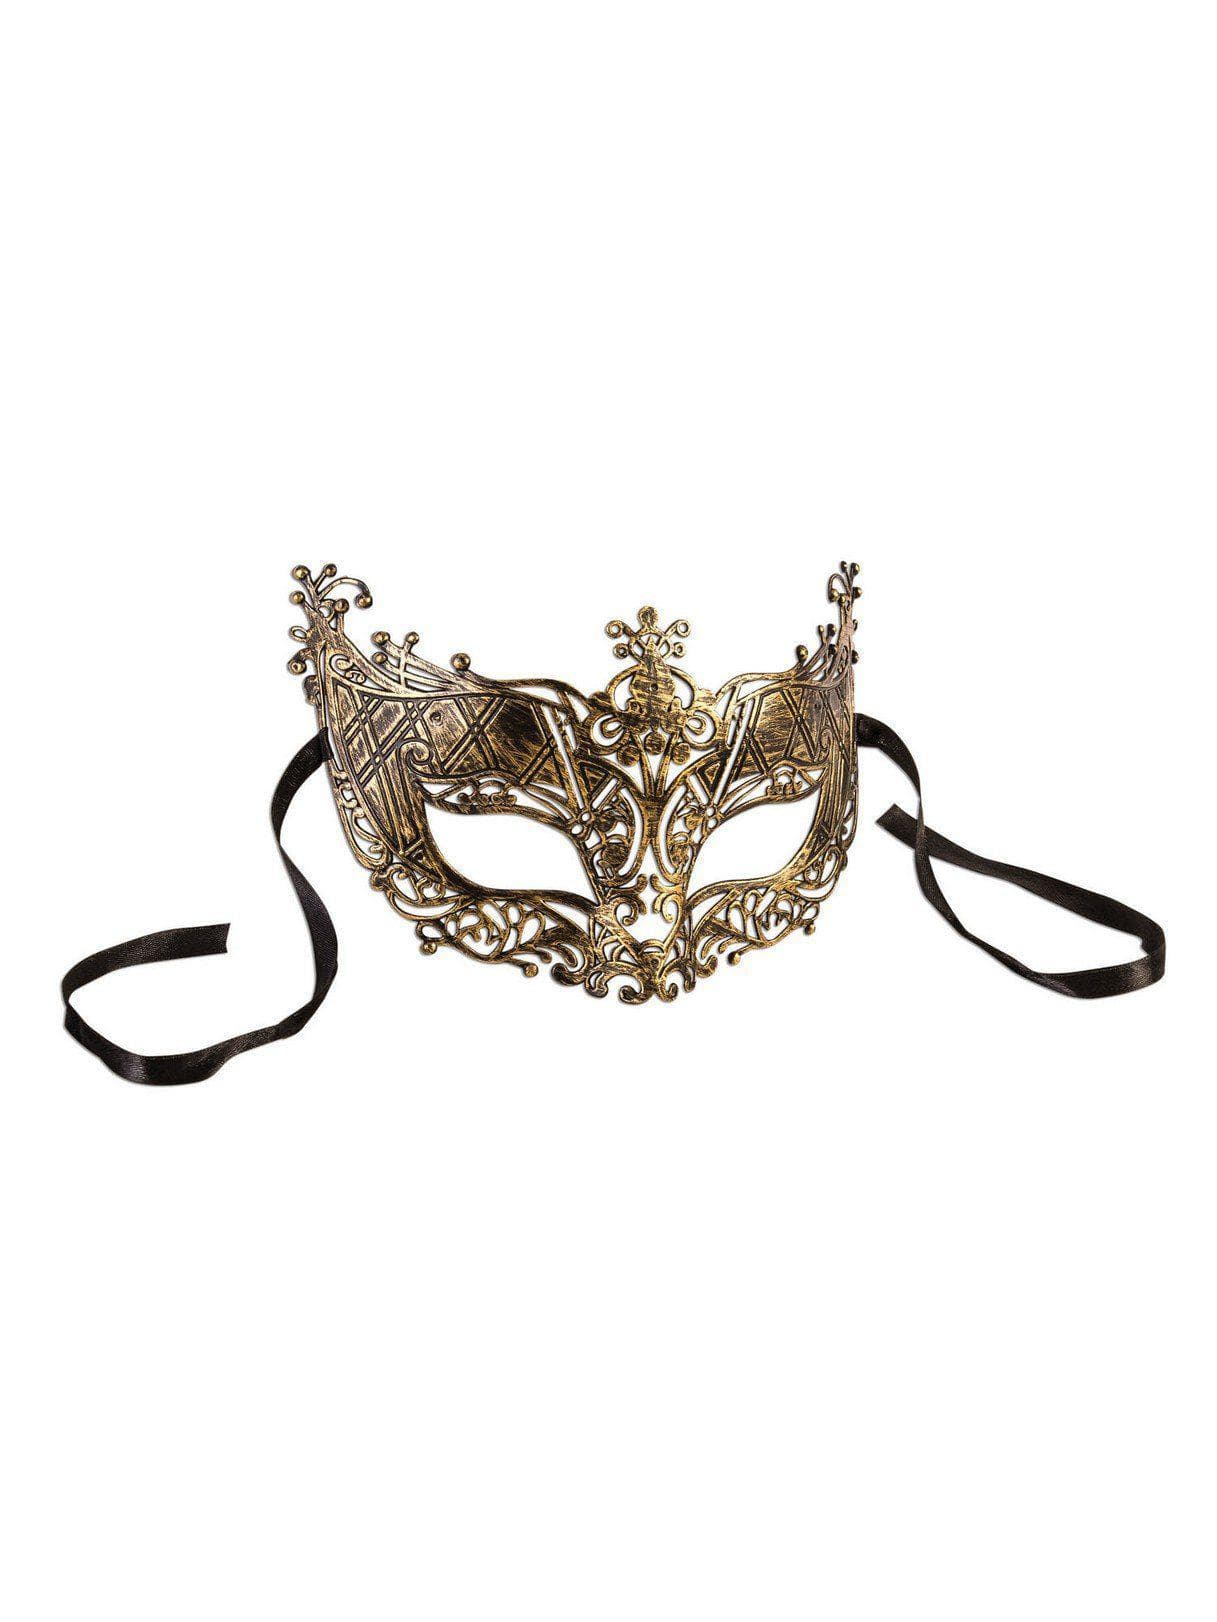 Filigree Gold Mask - costumes.com